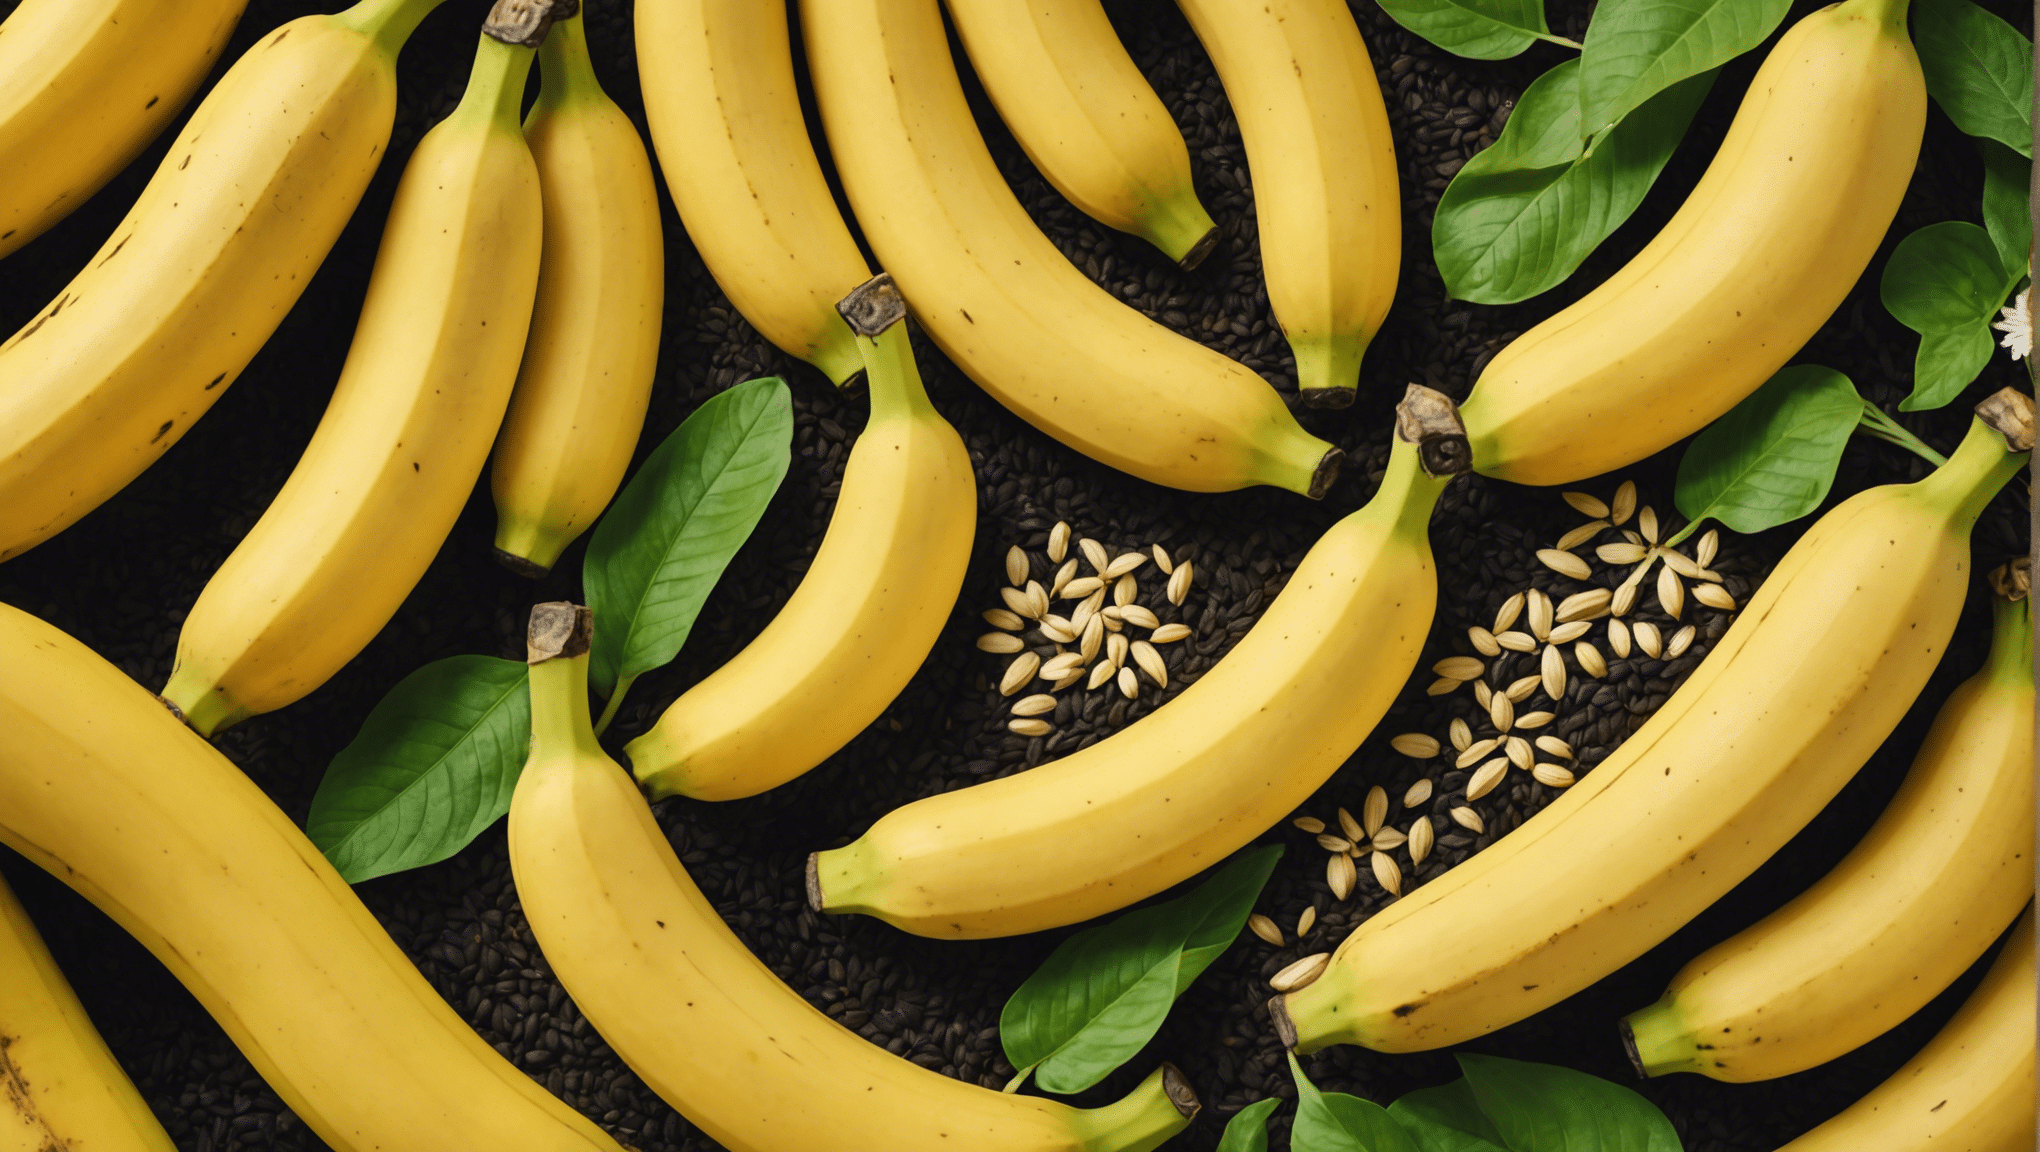 当社の総合ガイドで、種付きのバナナを食べることが安全かどうかを確認してください。種付きのバナナを摂取することの潜在的なリスクと利点について調べてください。